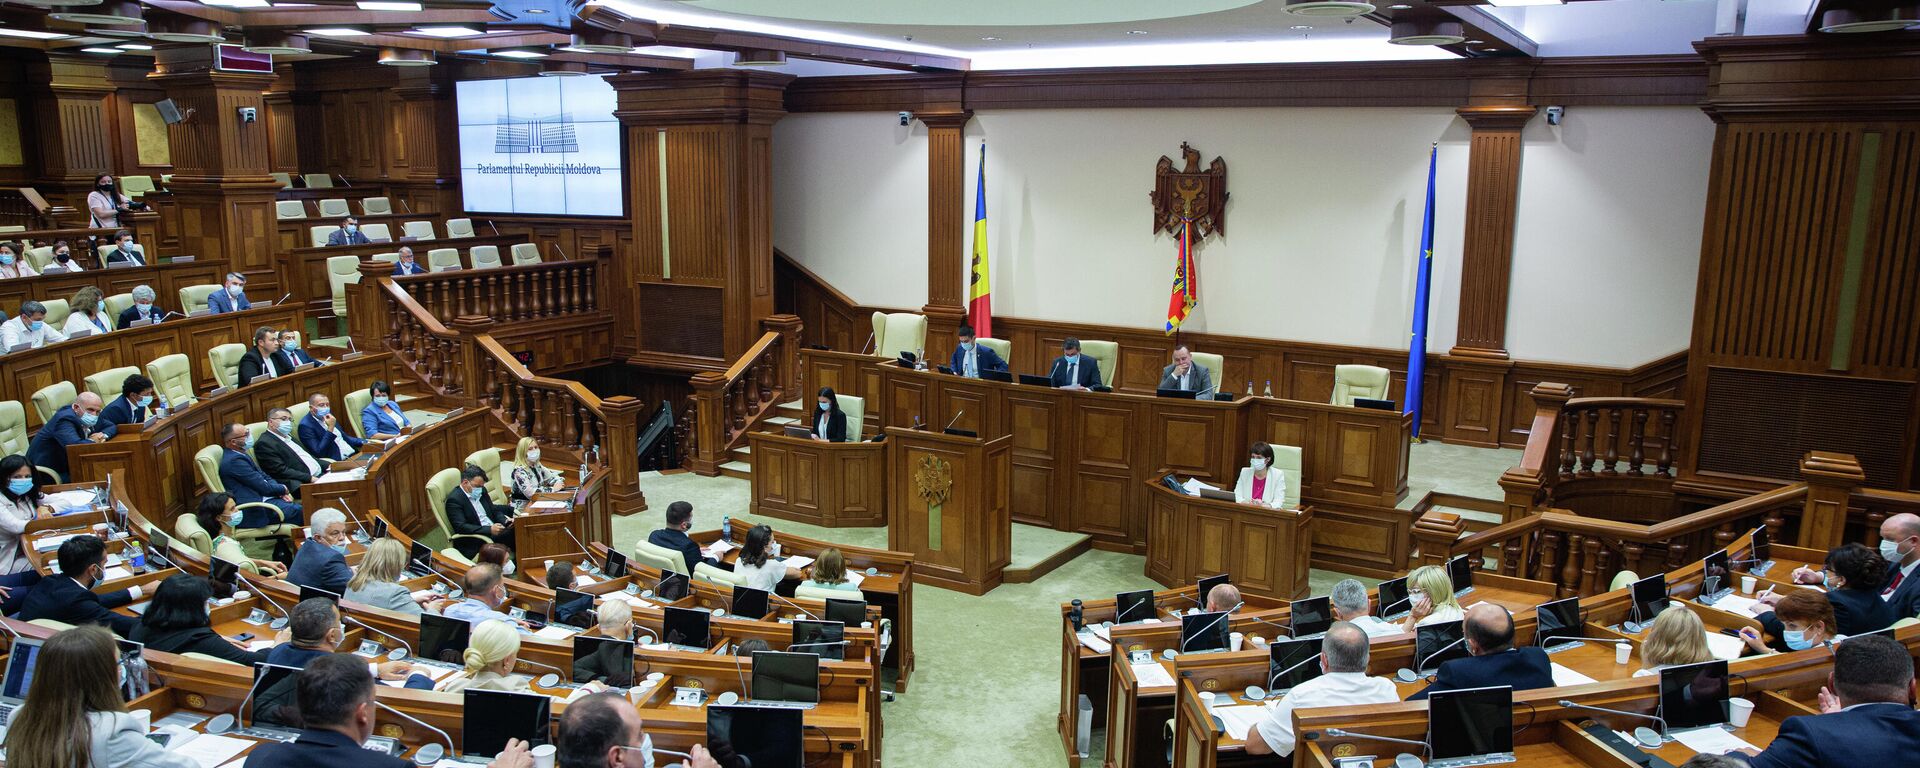 Deputați în Parlamentul Republicii Moldova  - Sputnik Moldova, 1920, 03.08.2021